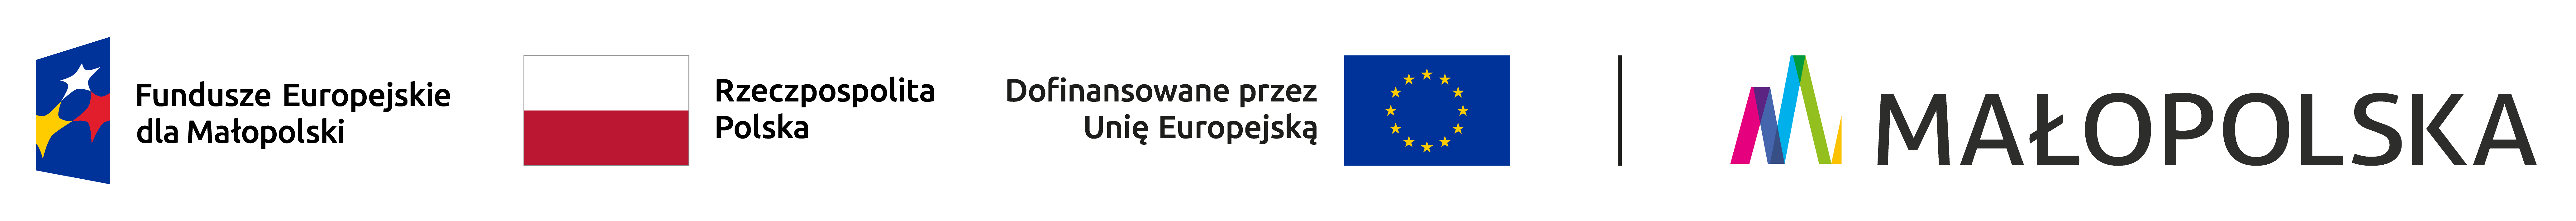 Zestawienie logotypów zawierające od lewej: znak Fundusze Europejskie dla Małopolski, flaga Rzeczypospolitej Polskiej, flaga Unii Europejskiej z podpisem dofinansowane przez Unię Europejską, logotyp Małopolska.